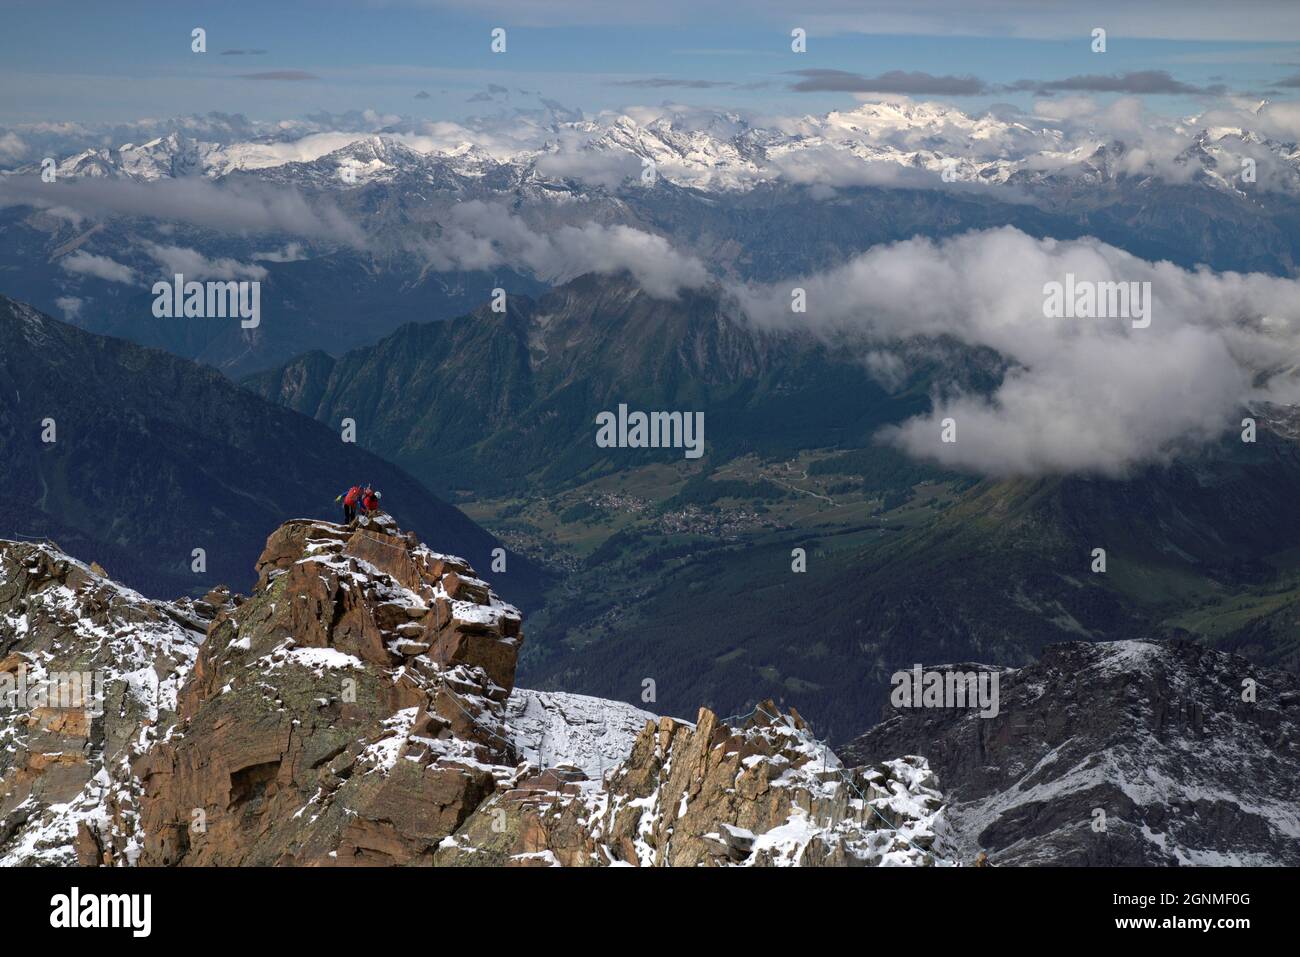 Alpinistas en un difícil sendero alpino en la cresta rocosa, Quintino Sella, Peninos Alpes, Valle de Aosta, Italia Foto de stock